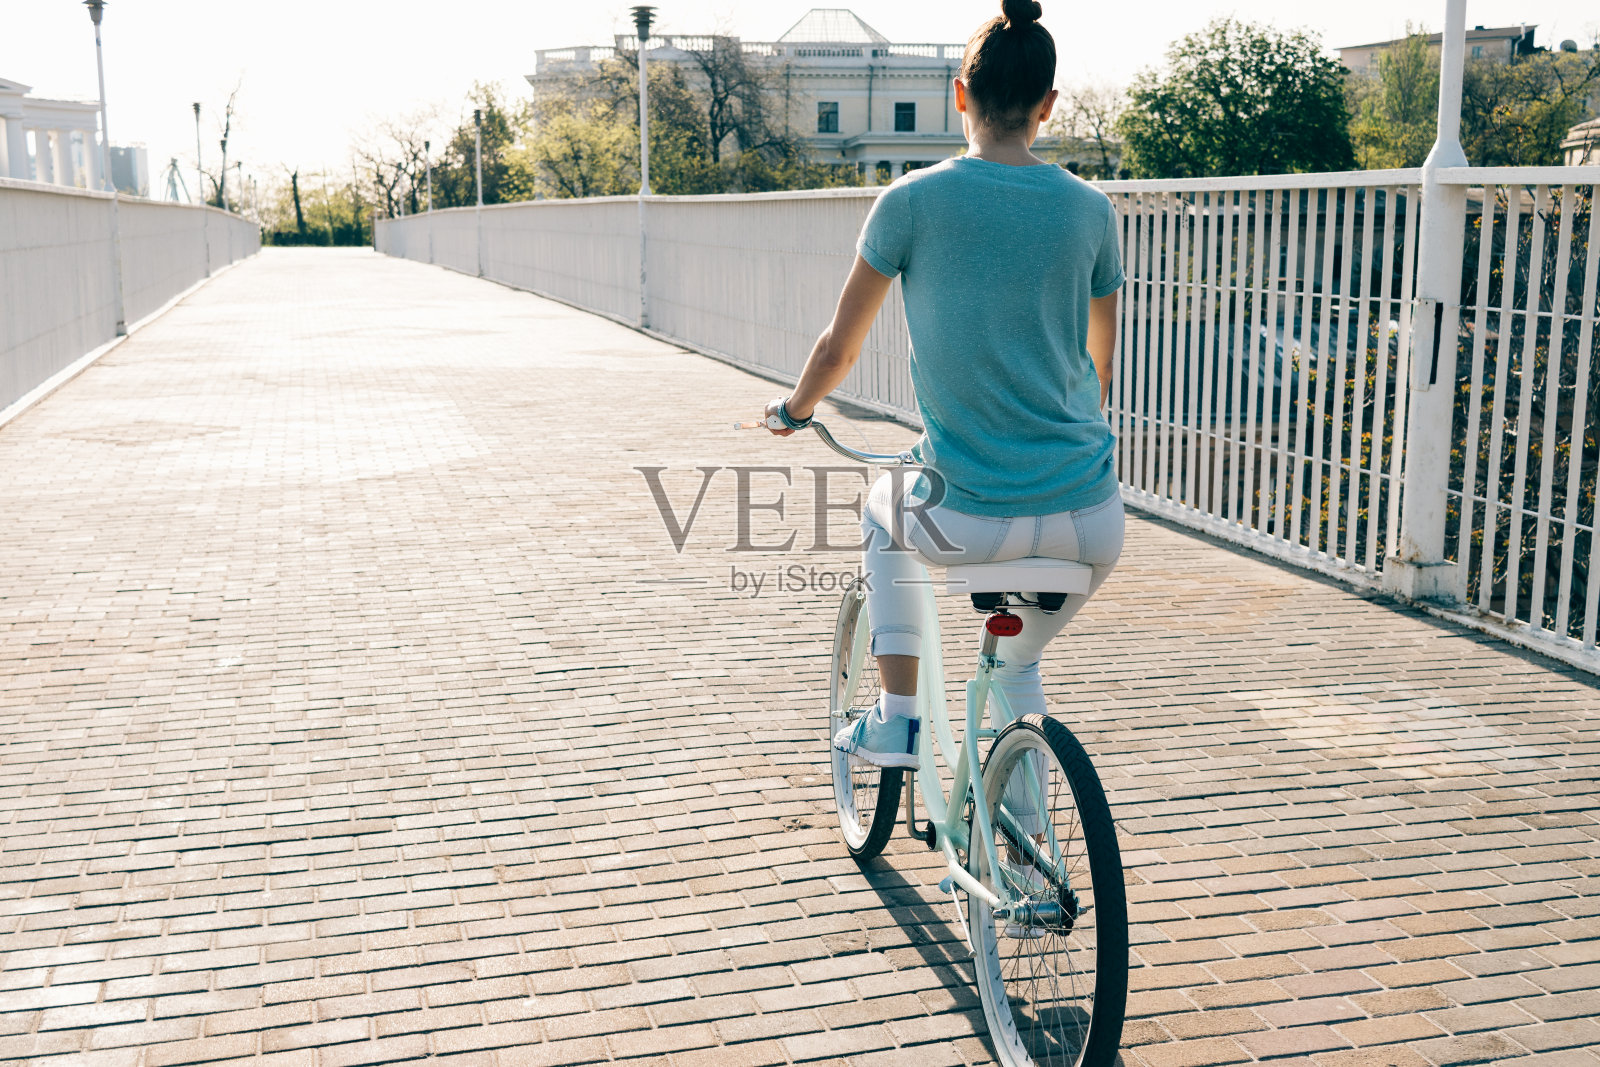 穿着牛仔裤和t恤的苗条女孩骑着一辆蓝色自行车穿过城市照片摄影图片